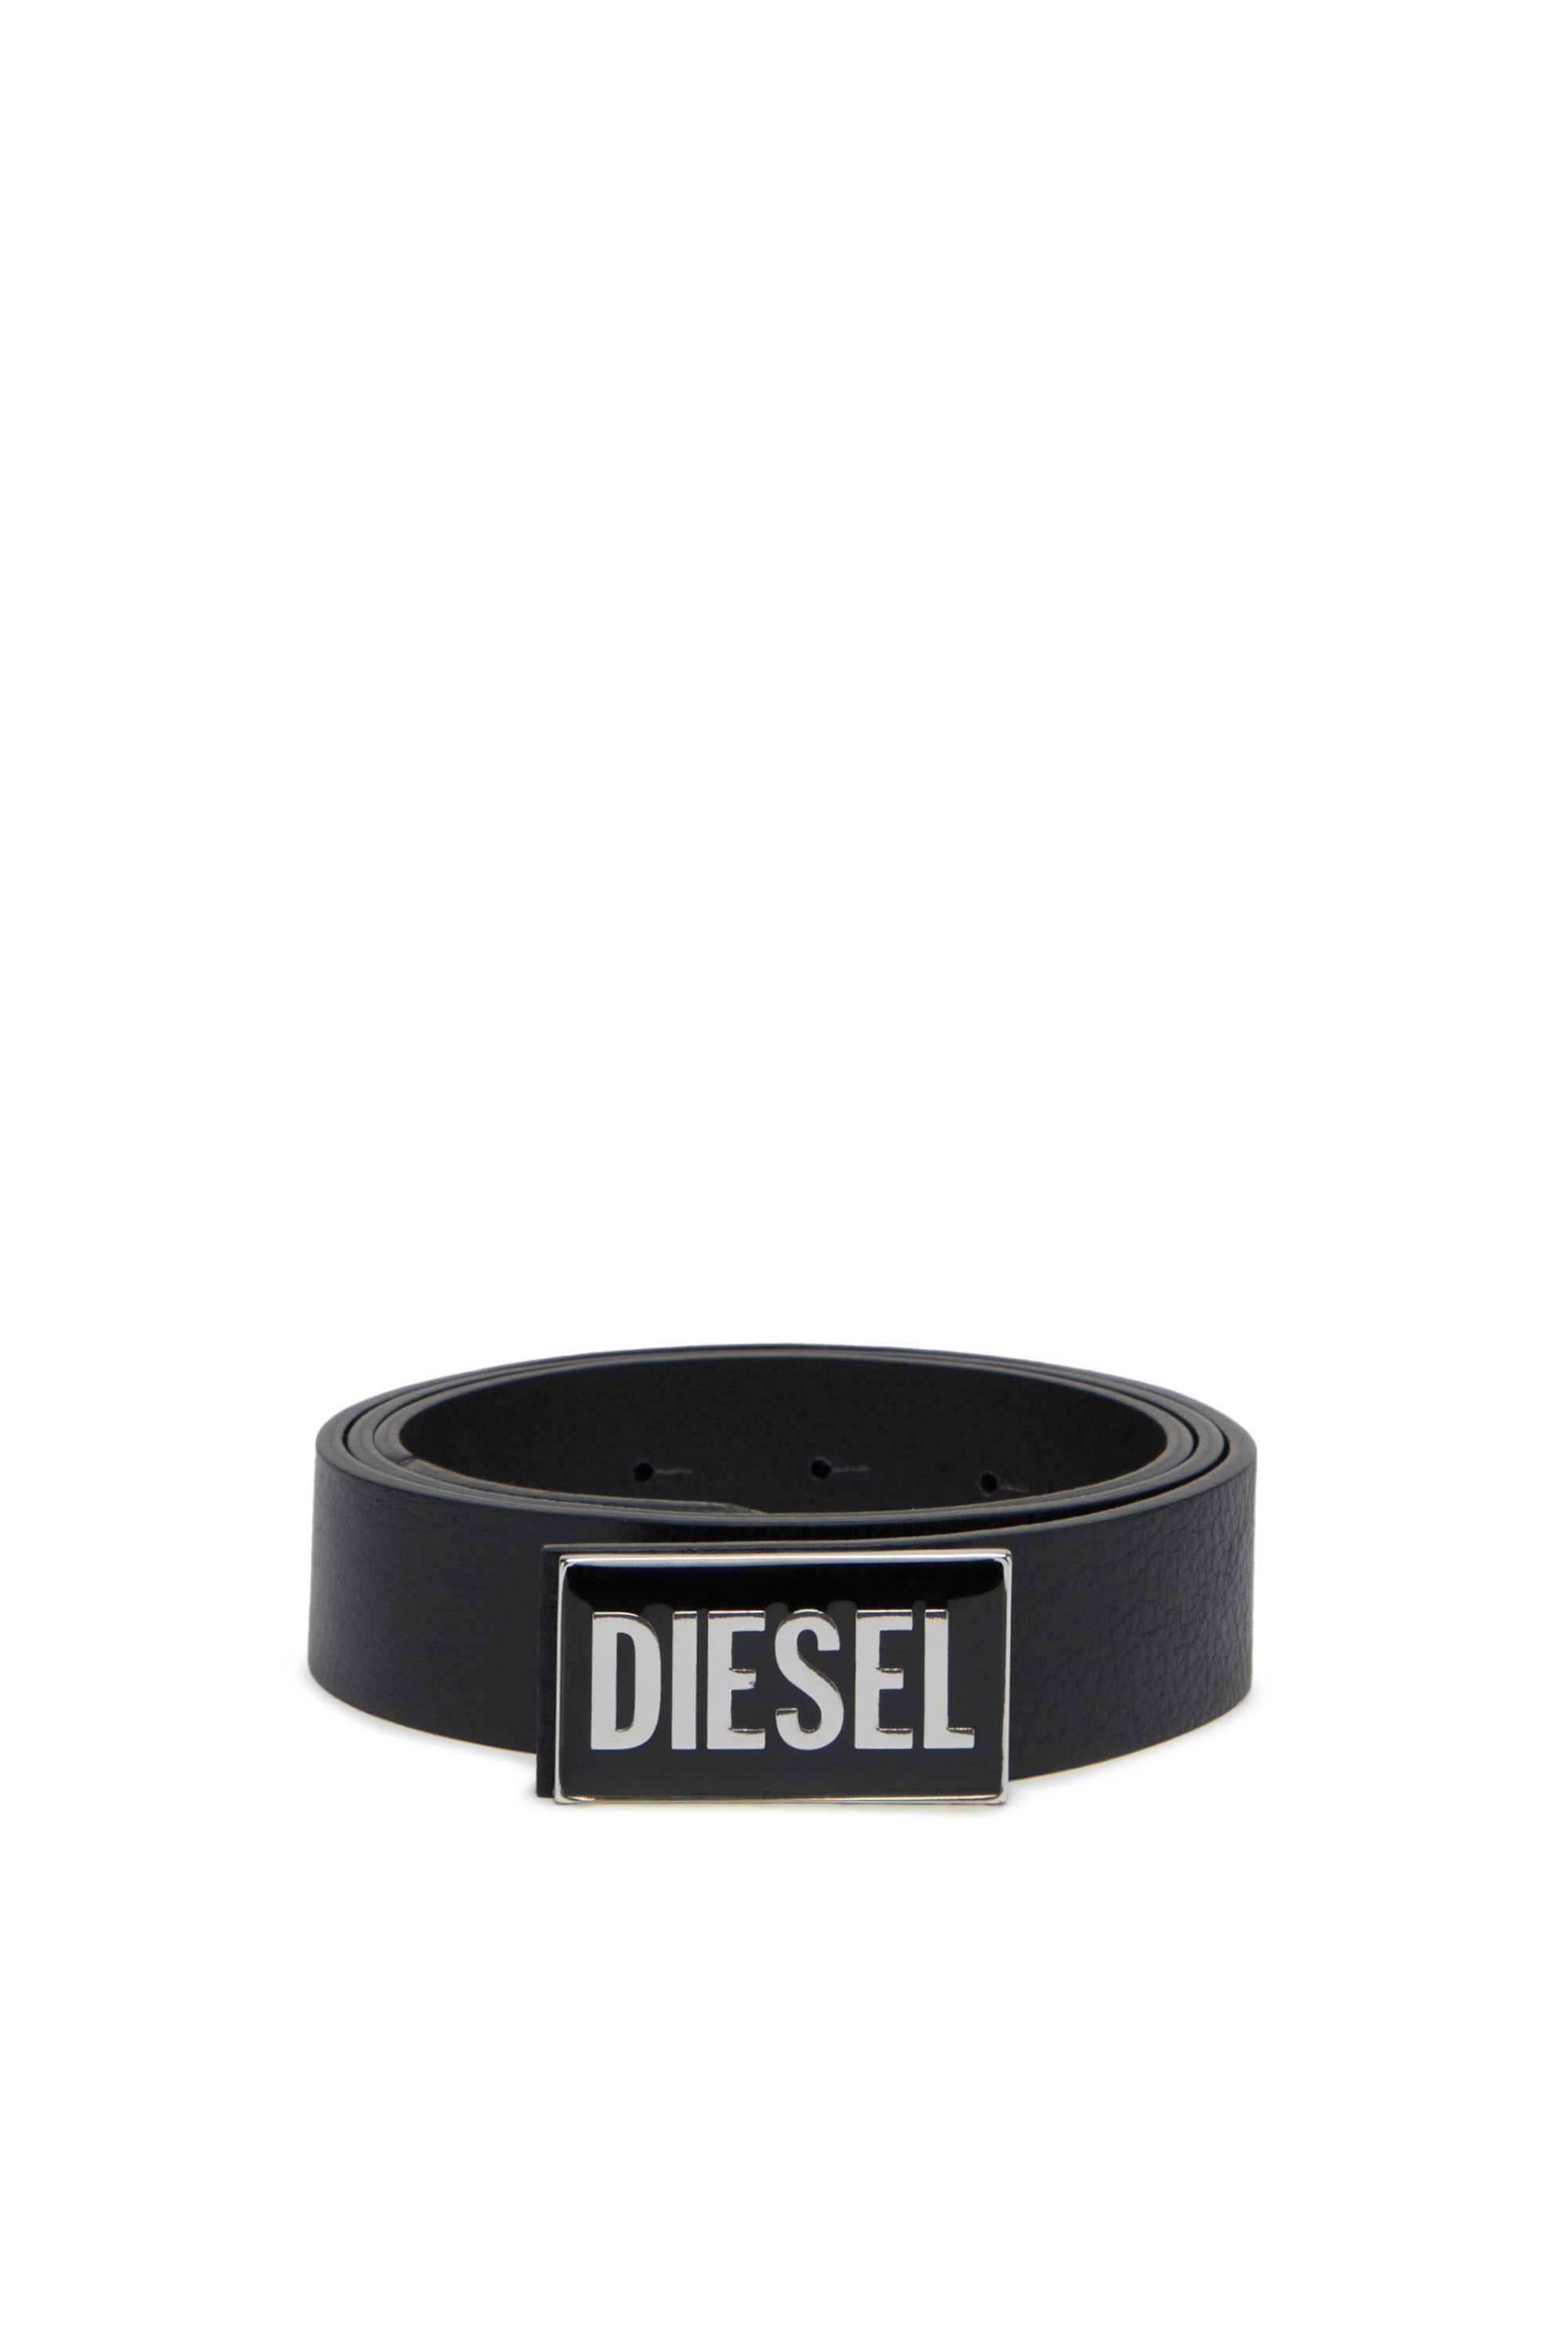 Diesel - B-GLOSSY, Noir - Image 1